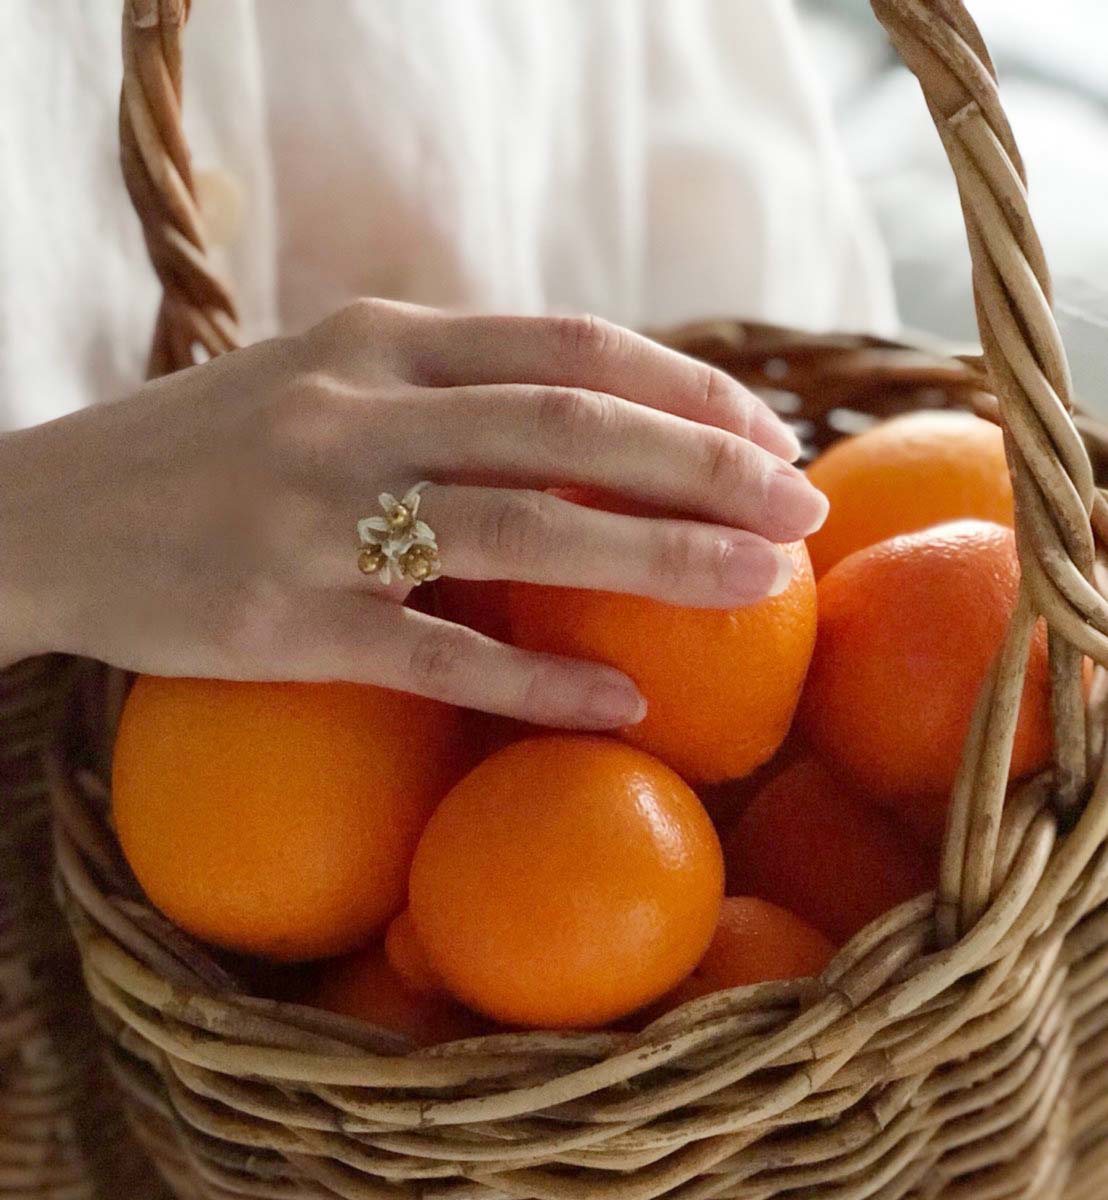 オレンジブロッサムのリング - トリプルフラワー / Orange Blossom Ring - Triple Flower